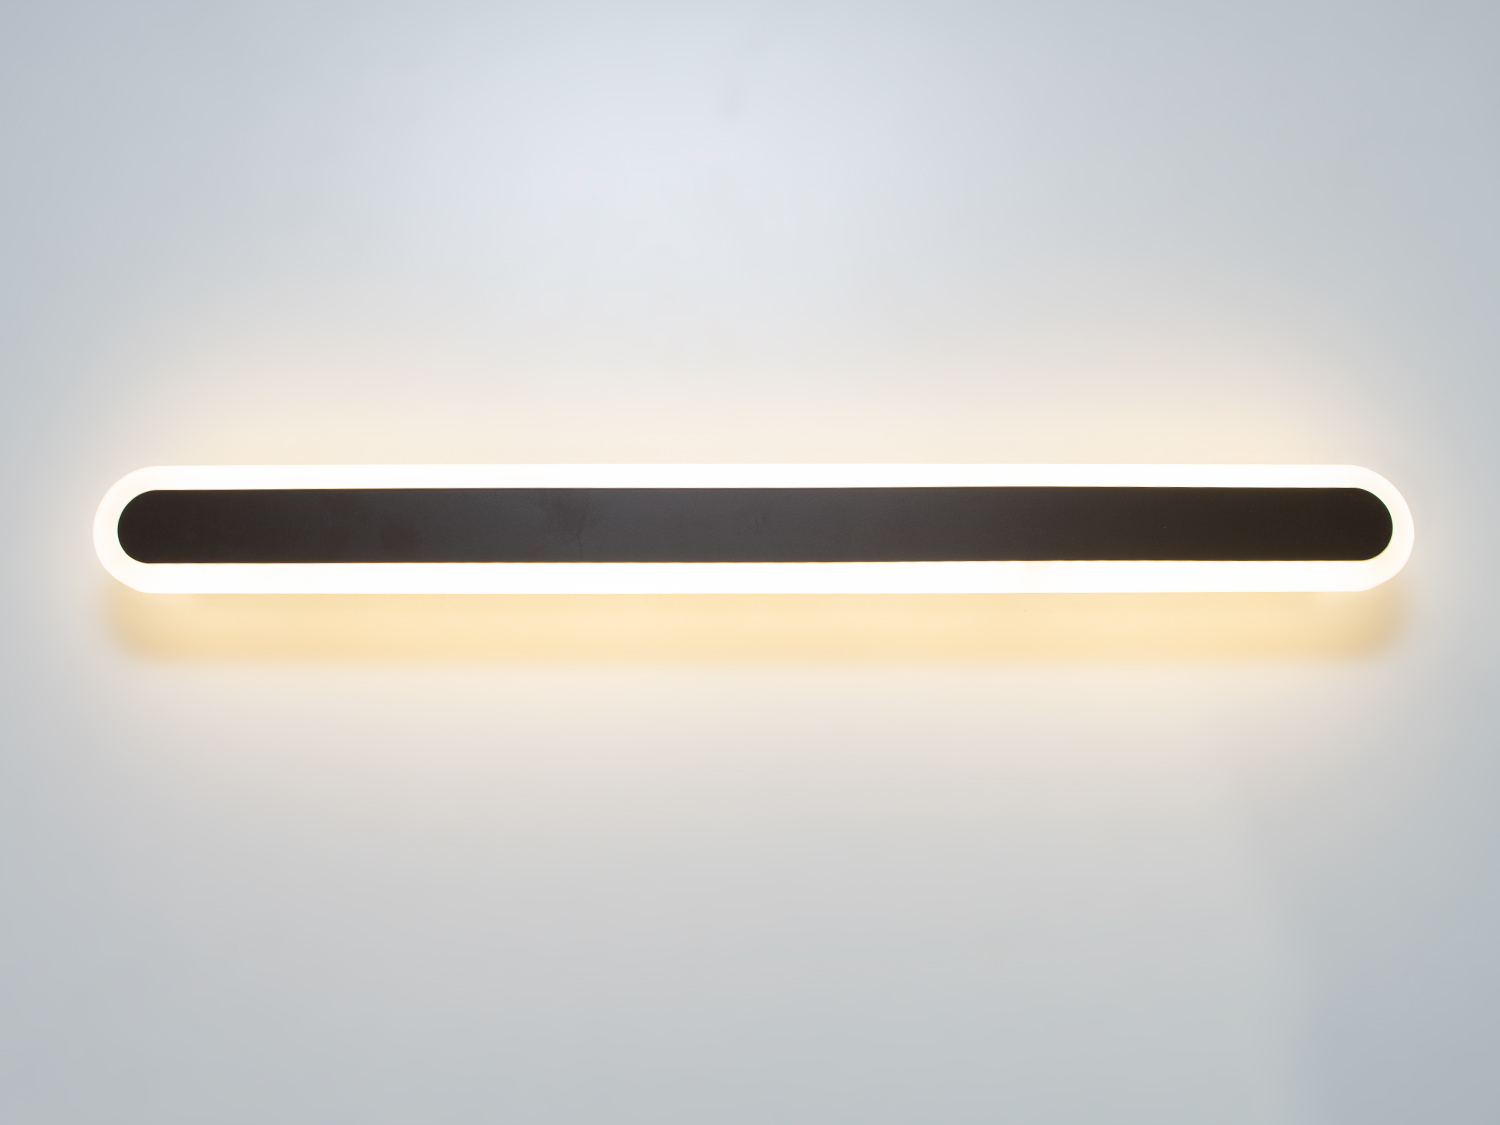 Світлодіодний світильник-бра на 30W відрізняється своєю унікальністю та сучасним дизайном. Він представляє собою елегантну і лаконічну лінію світла, яка ідеально підходить для створення чистого освітлення в будь-якому просторі, будь то спальня або кабінет. Його чисті, прямі лінії і мінімалістична естетика роблять його вишуканим доповненням до сучасного інтер'єру.
Світильник-бра складається з довгої світлодіодної панелі, обрамленої тонкою акриловою обідкою, що надає йому витонченого зовнішнього вигляду. Металева основа світильника має ненав'язливий чорний матовий колір, що контрастує з яскравістю світлодіодів, створюючи візуальний інтерес і глибину. Відсутність видимих кріплень і кабелів посилює враження легкості та плавності дизайну.
Освітлення від цього світильника не мерехтить, що робить його безпечним для очей і забезпечує комфорт при його використанні протягом тривалого часу. Це особливо важливо, коли світильник використовується в якості додаткового джерела світла в кабінеті або як нічне освітлення в спальні.
Великий термін використання є однією з ключових переваг світлодіодних світильників, і цей бра не є винятком. Його світлодіоди розраховані на довгий термін служби, забезпечуючи надійне та енергоефективне освітлення, що знижує потребу в частій заміні світлодіодної стрічки і допомагає економити витрати на електроенергію.
Світильник-бра може ефективно доповнити будь-який інтер'єр, від класичного до ультрамодерного, додавши стрункість та елегантність своїм обрисам. Його простий, але ефектний дизайн робить його ідеальним варіантом для тих, хто прагне створити спокійну, але стильну атмосферу.
Коли мова заходить про покупку, цей світильник-бра також може бути доступним варіантом для тих, хто шукає якість за розумною ціною. Його вартість і якість роблять його привабливим вибором для широкого кола покупців, що шукають не лише функціональність, але й дизайнерську цінність у своїх освітлювальних рішеннях.
У підсумку, цей світлодіодний бра не просто освітлює простір, він приносить в нього стиль та досконалість, роблячи кожну стіну полотном для вираження сучасного мистецтва освітлення.